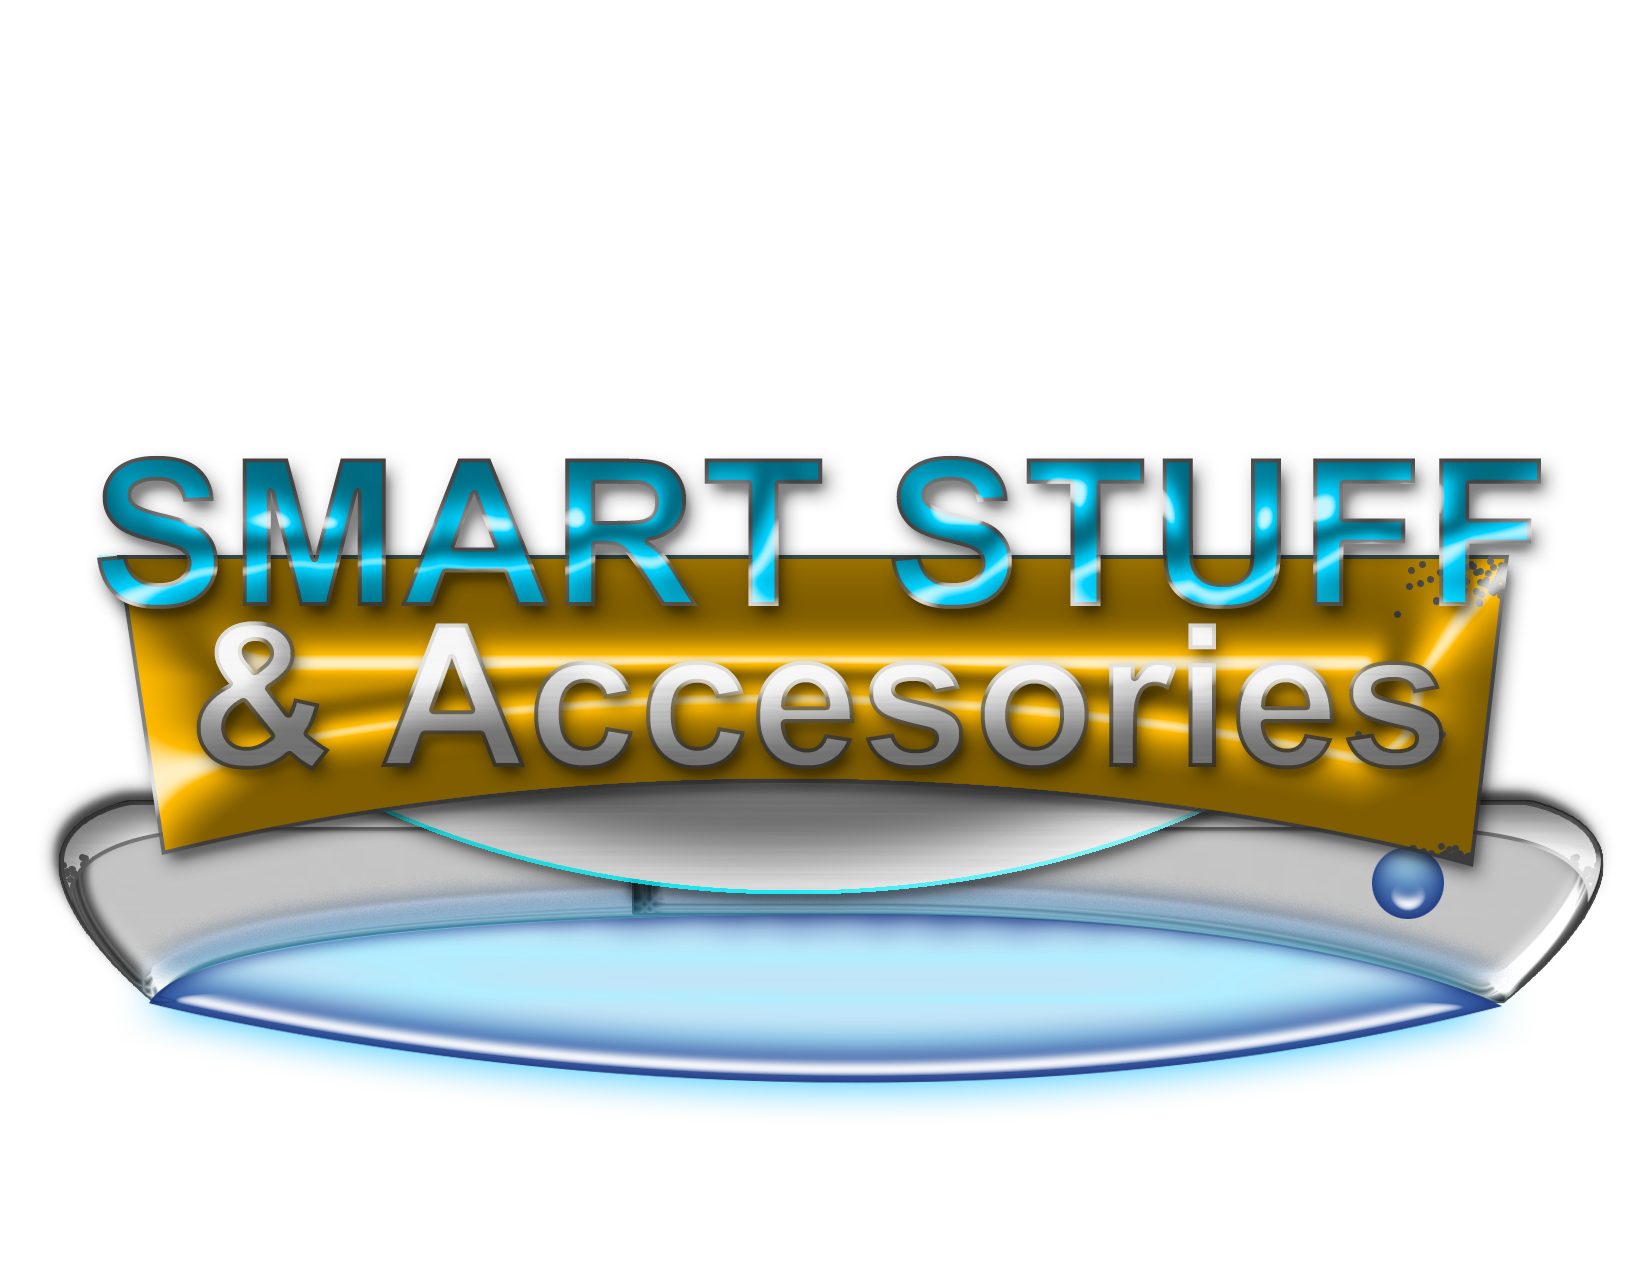 SMART Stuff & Accesories